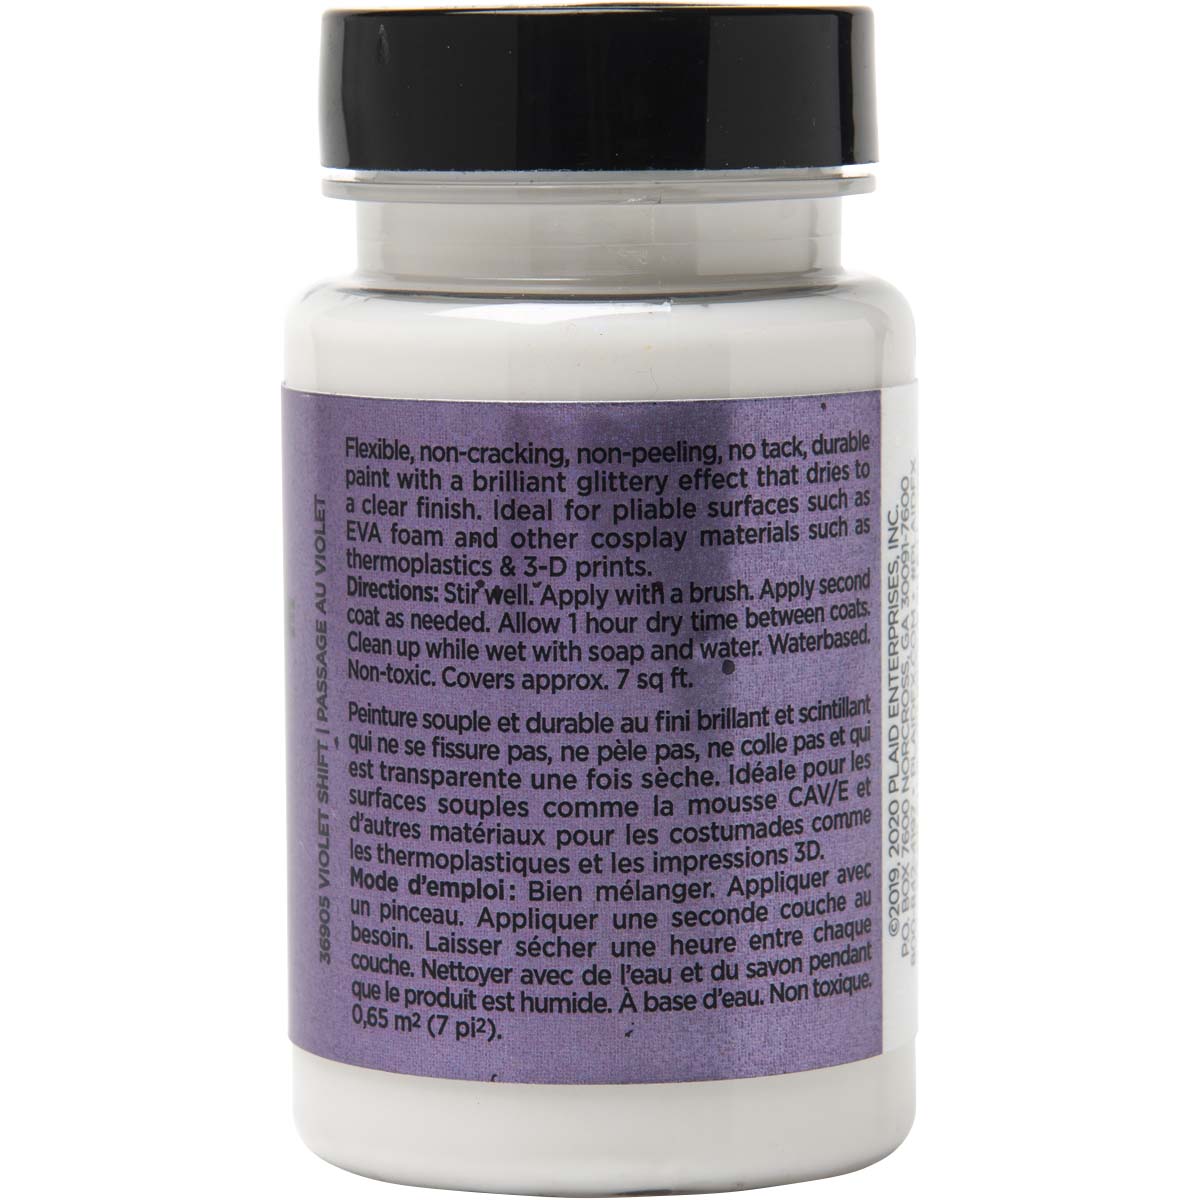 PlaidFX Hi-Voltage Glitter Flexible Acrylic Paint - Violet Shift, 3 oz. - 36905